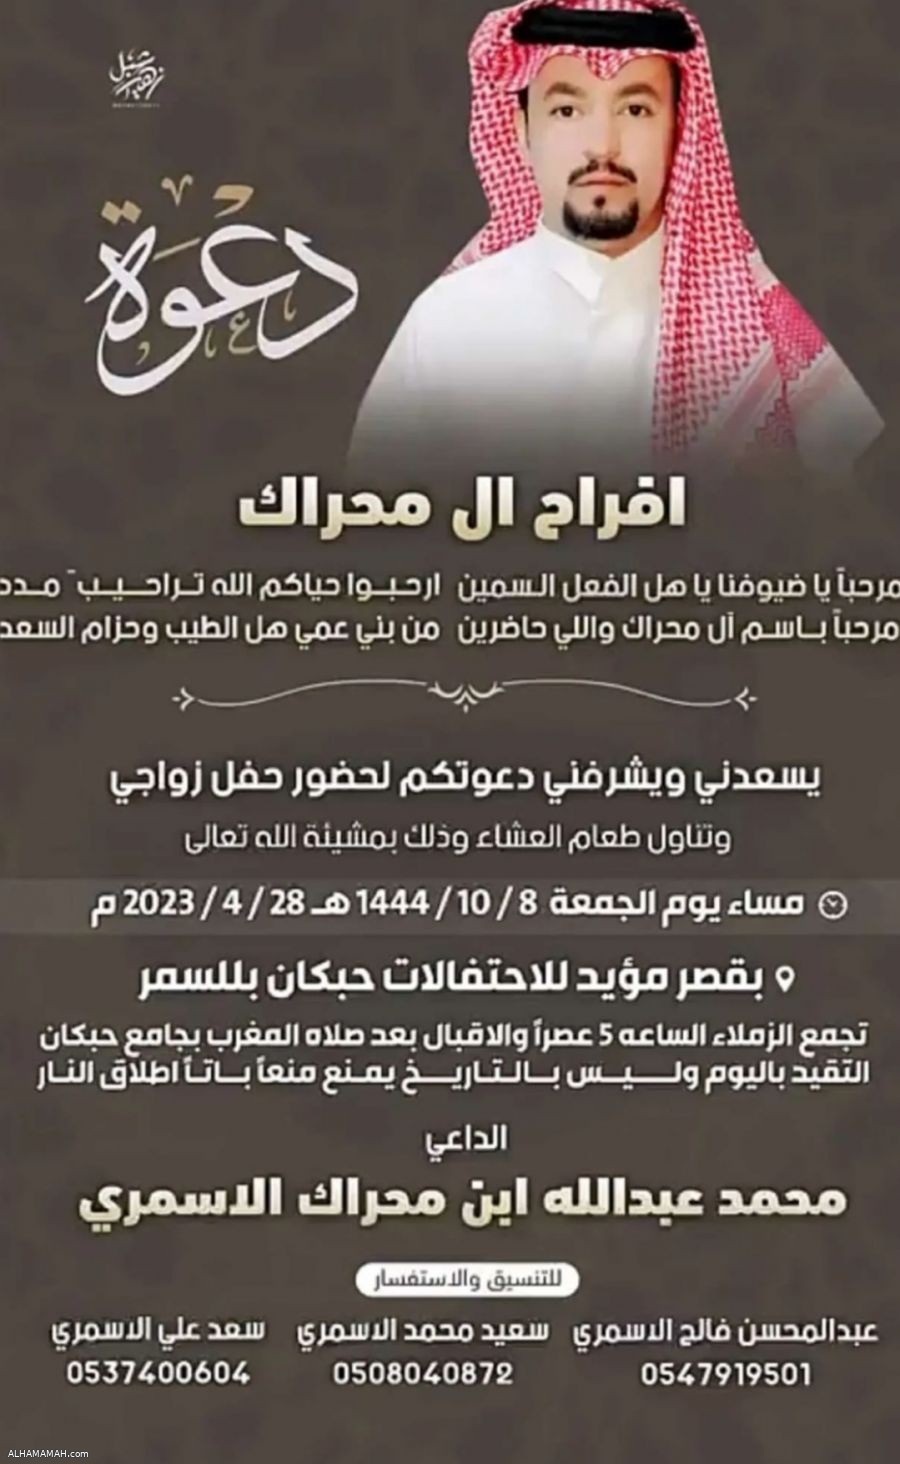 يحتفل الأخ / محمد بن عبدالله بن محراك بزواجه يوم الجمعة ١٤٤٤/١٠/٨هـ بقصر حبكان للاحتفالات